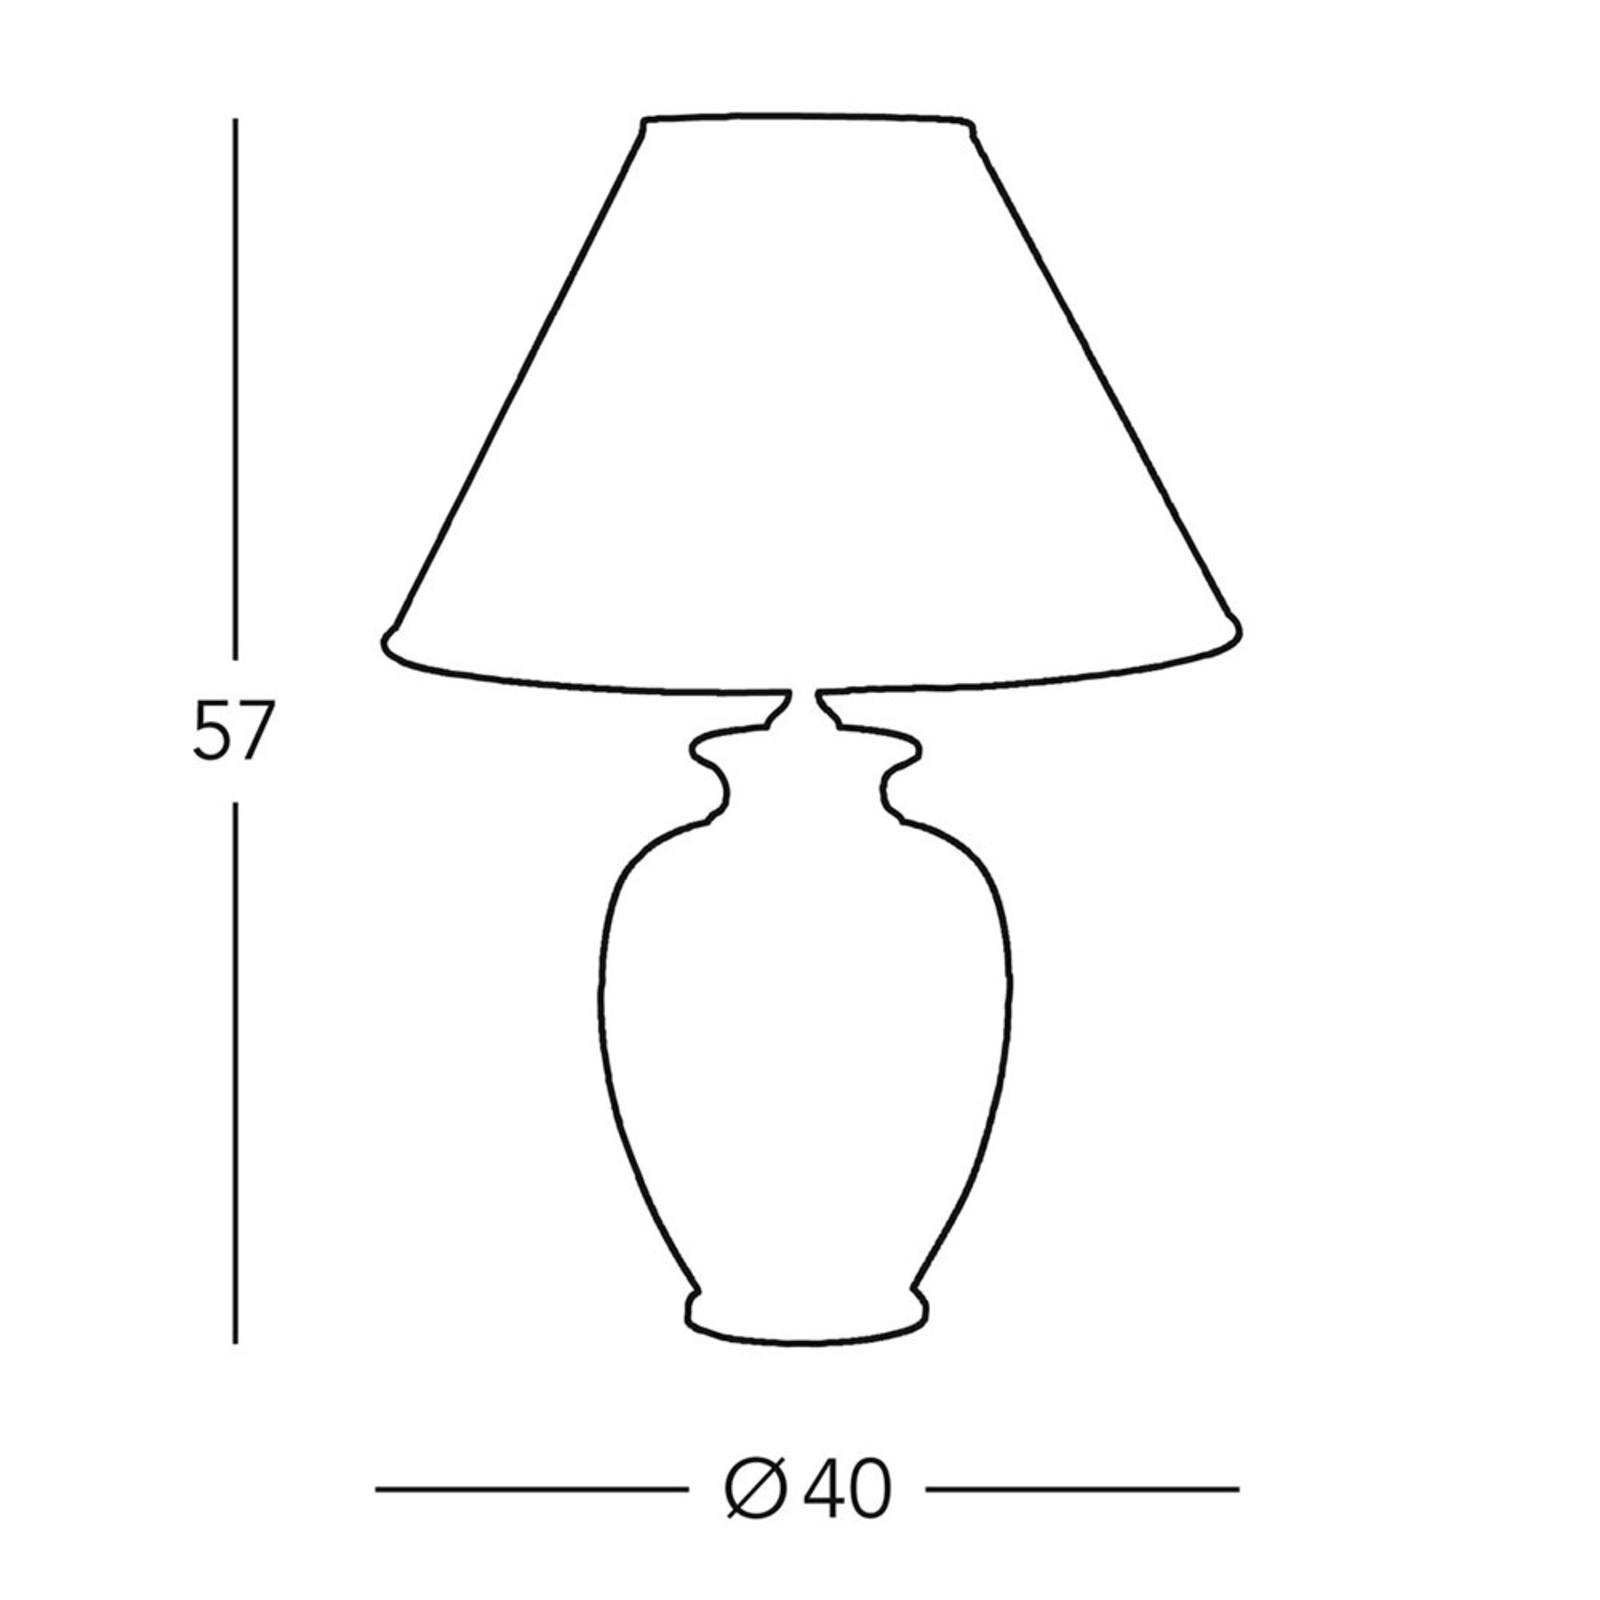 Pöytälamppu Giardino Avorio valkoinen-kulta Ø40 cm